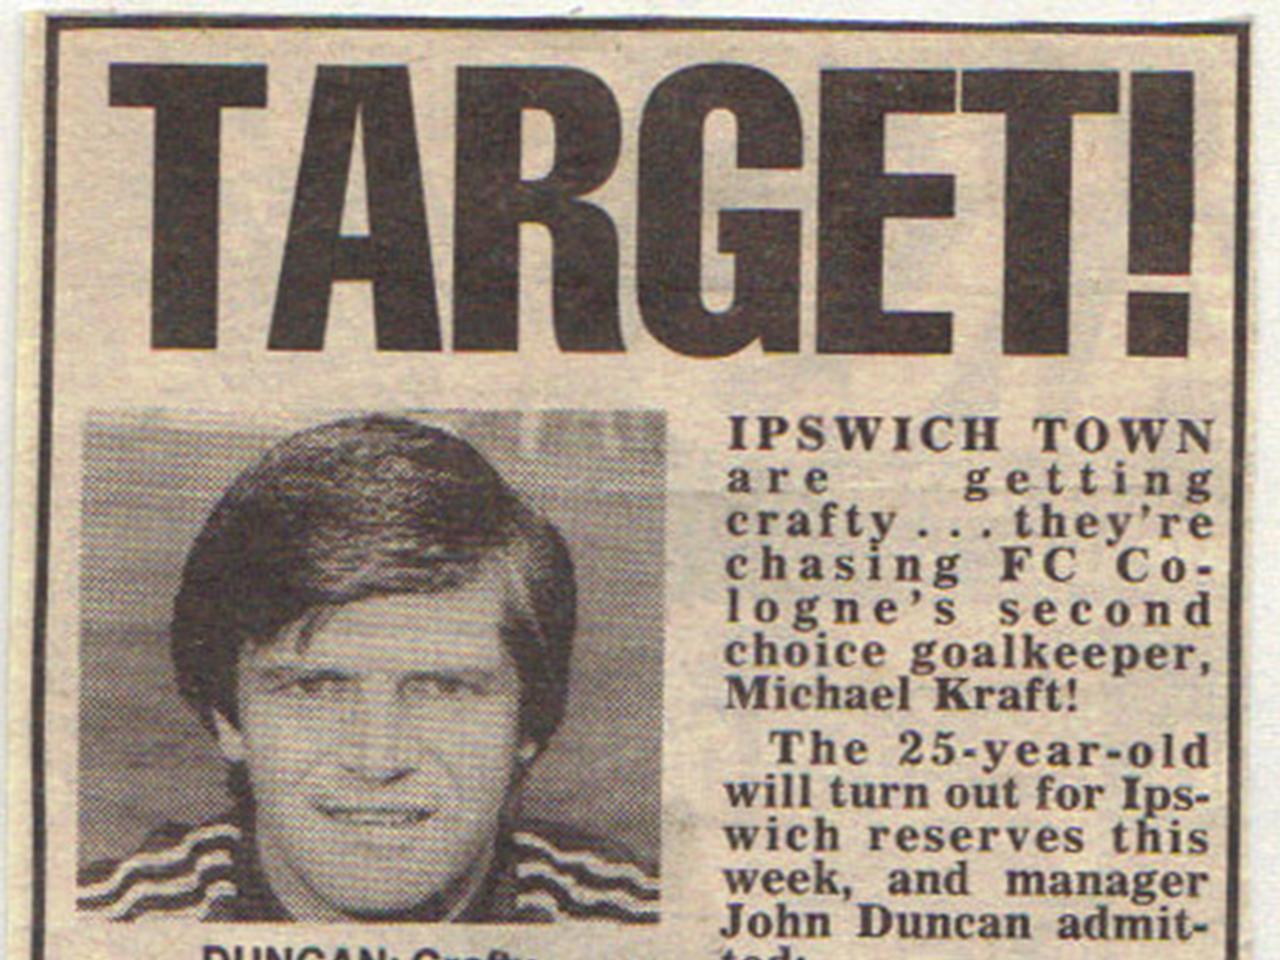 Angebot von Coach Duncan - Ipswich Town für Saison 1990